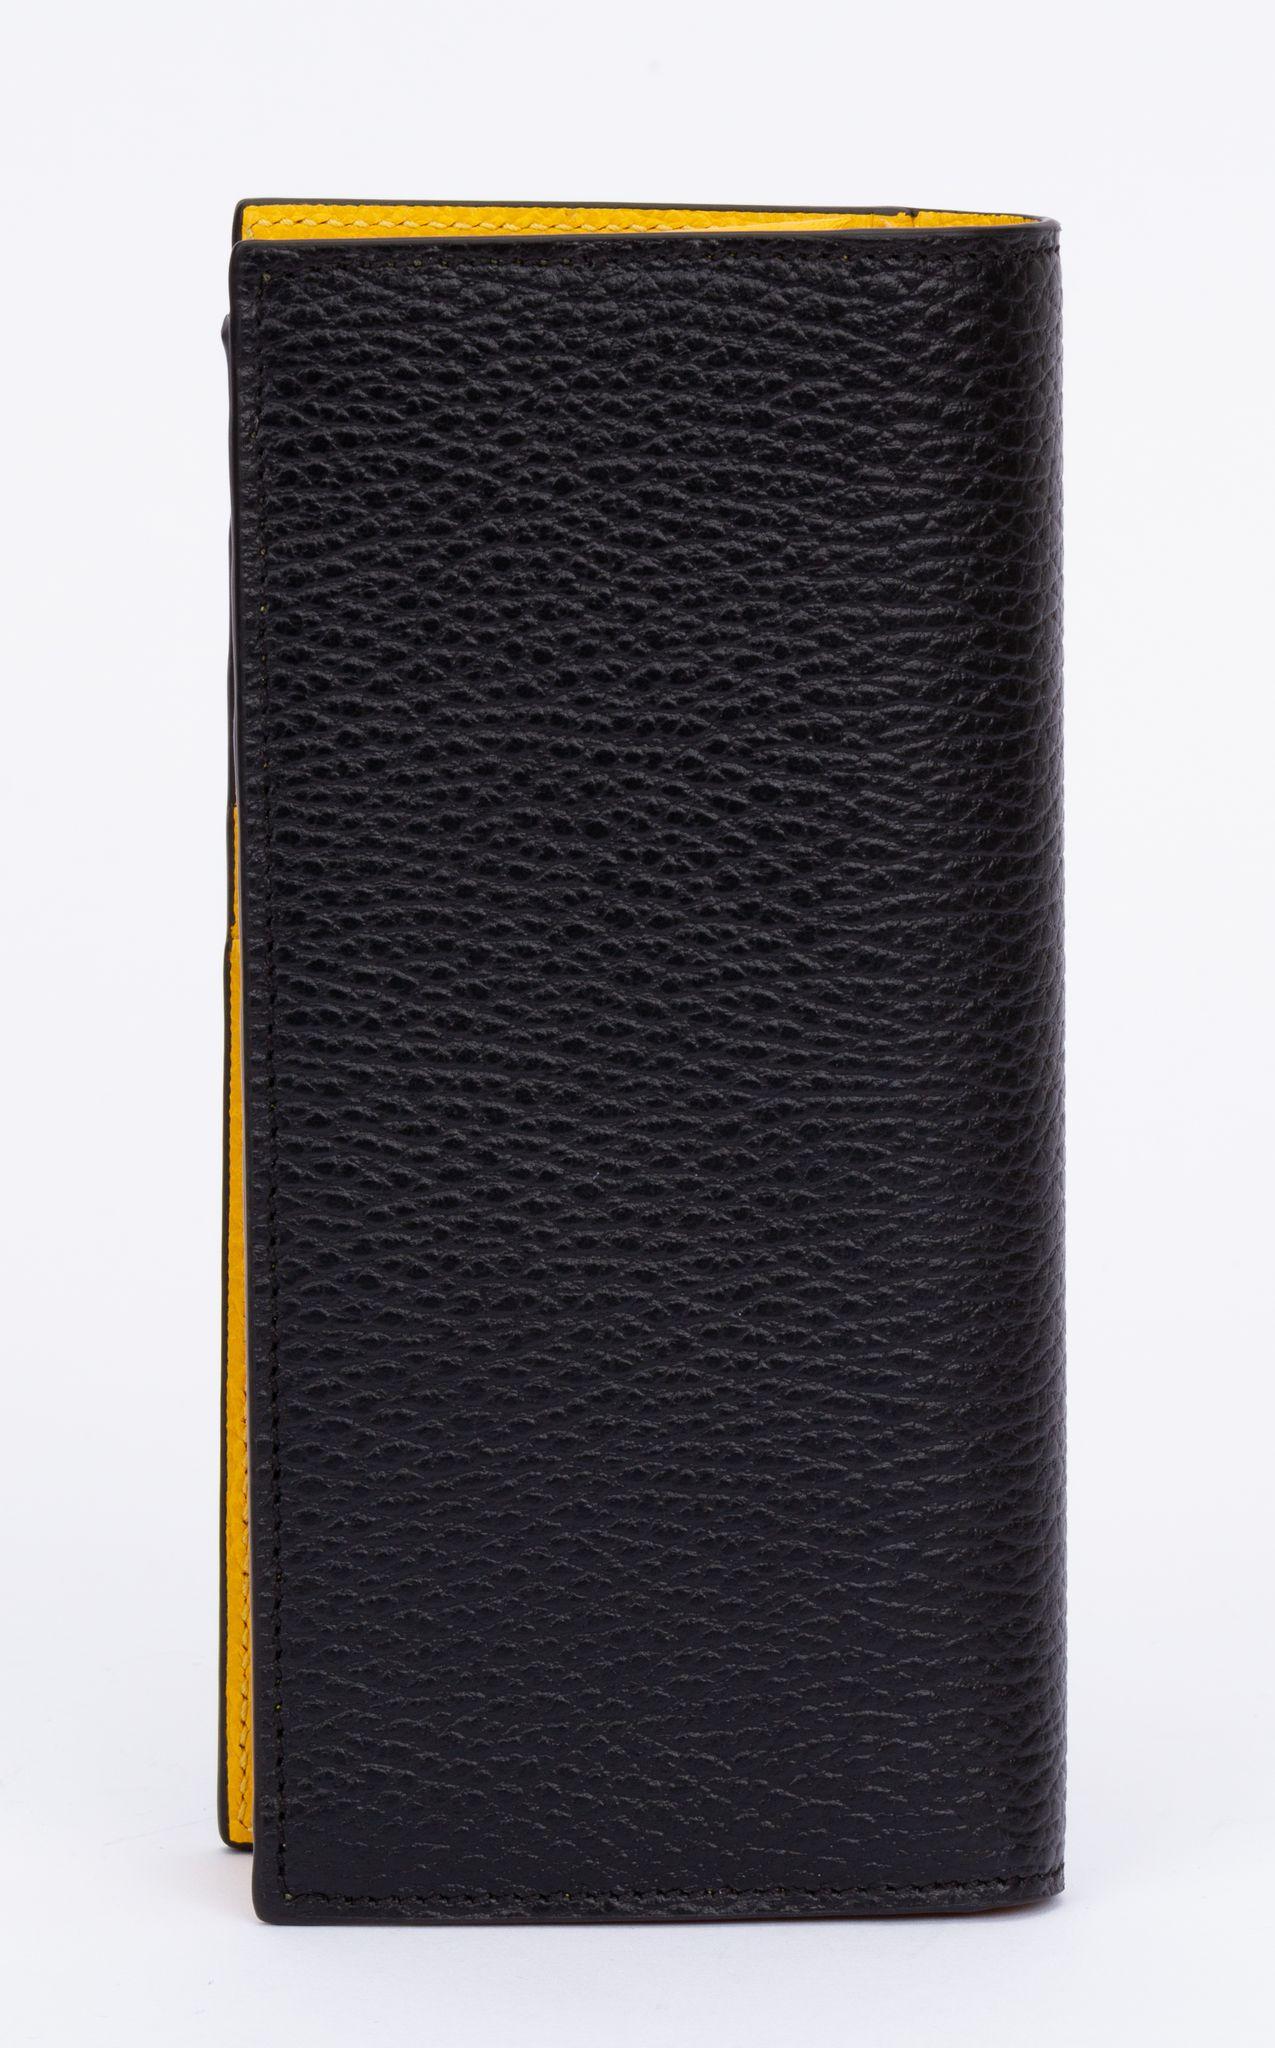 Gucci Leder Foldes Geldbörse aus Leder. Die Außenseite ist schwarz, während die Innenseite gelb ist. In der rechten vorderen Ecke befindet sich ein kleines GG-Logo. Im Inneren befinden sich mehrere Kartenfächer und eine Reißverschlusstasche. Das